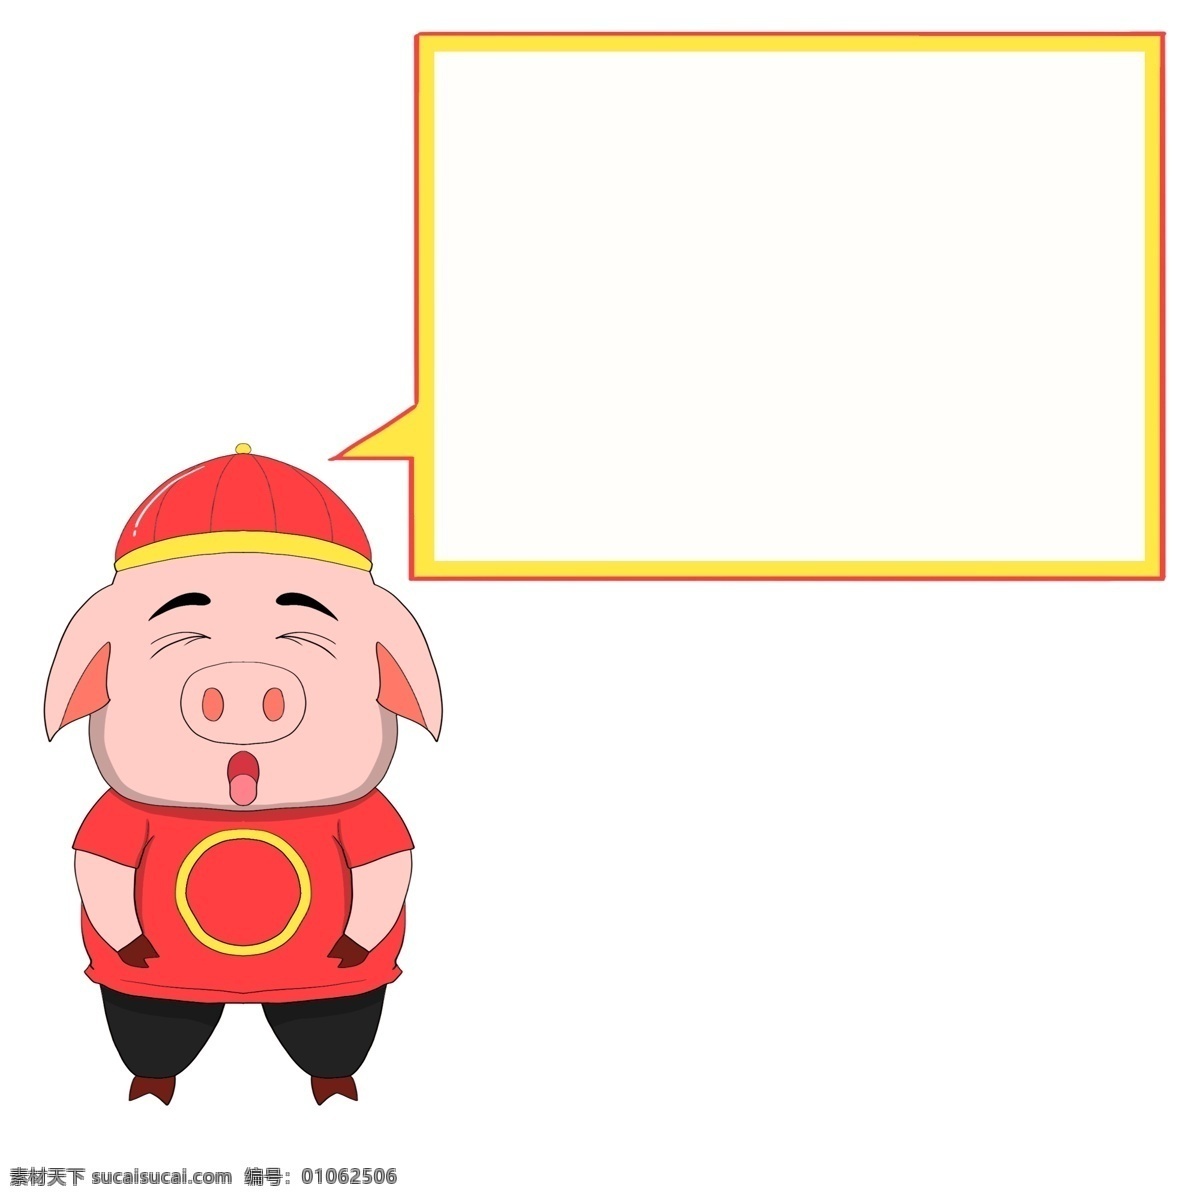 打瞌睡 小 猪 对话框 插画 黄色对话框 方形对话框 打瞌睡的小猪 睡觉的小猪 福 穿 红衣 服